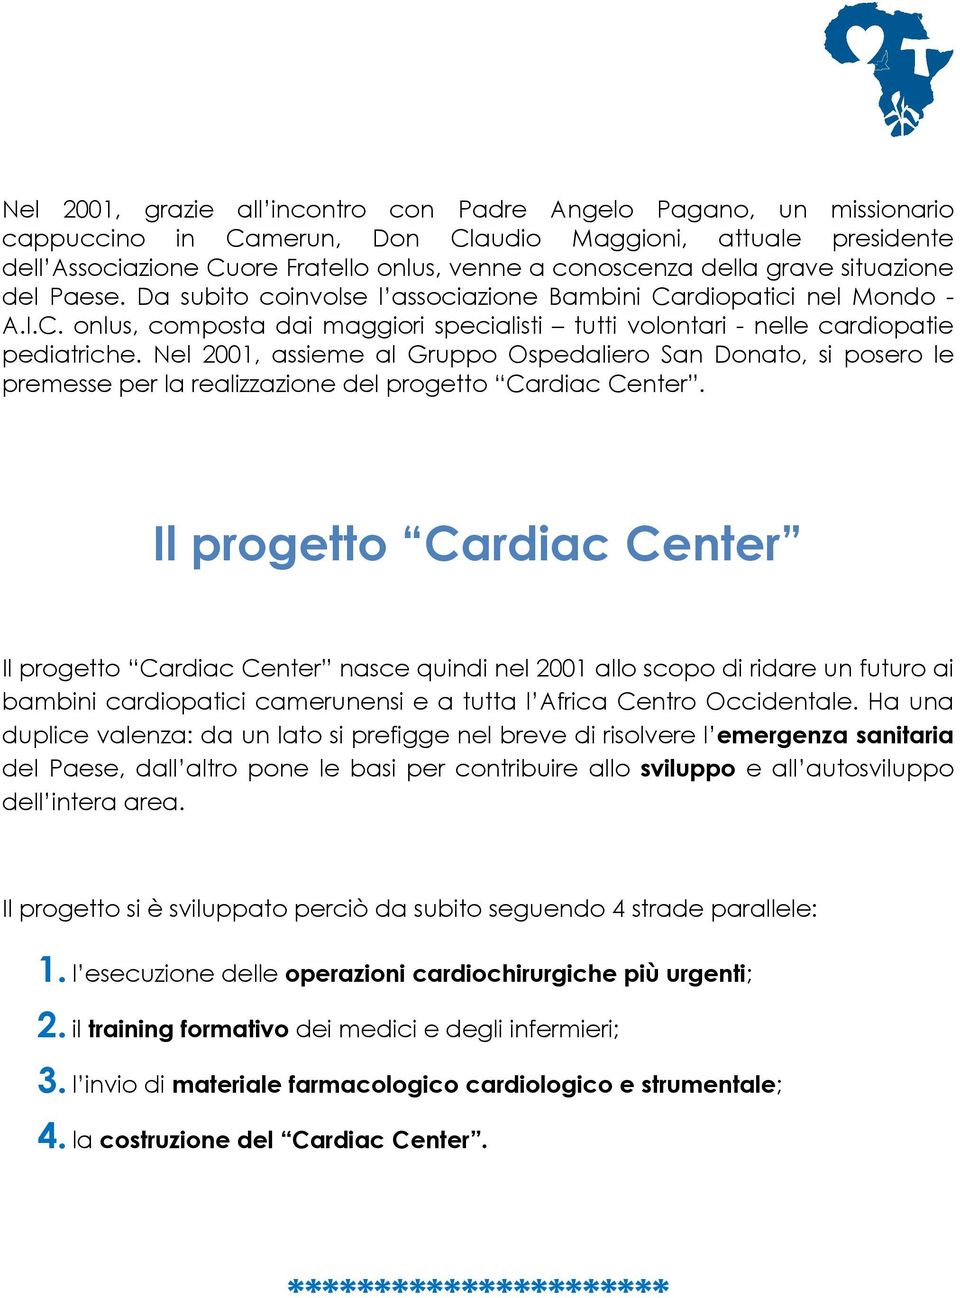 Nel 2001, assieme al Gruppo Ospedaliero San Donato, si posero le premesse per la realizzazione del progetto Cardiac Center.